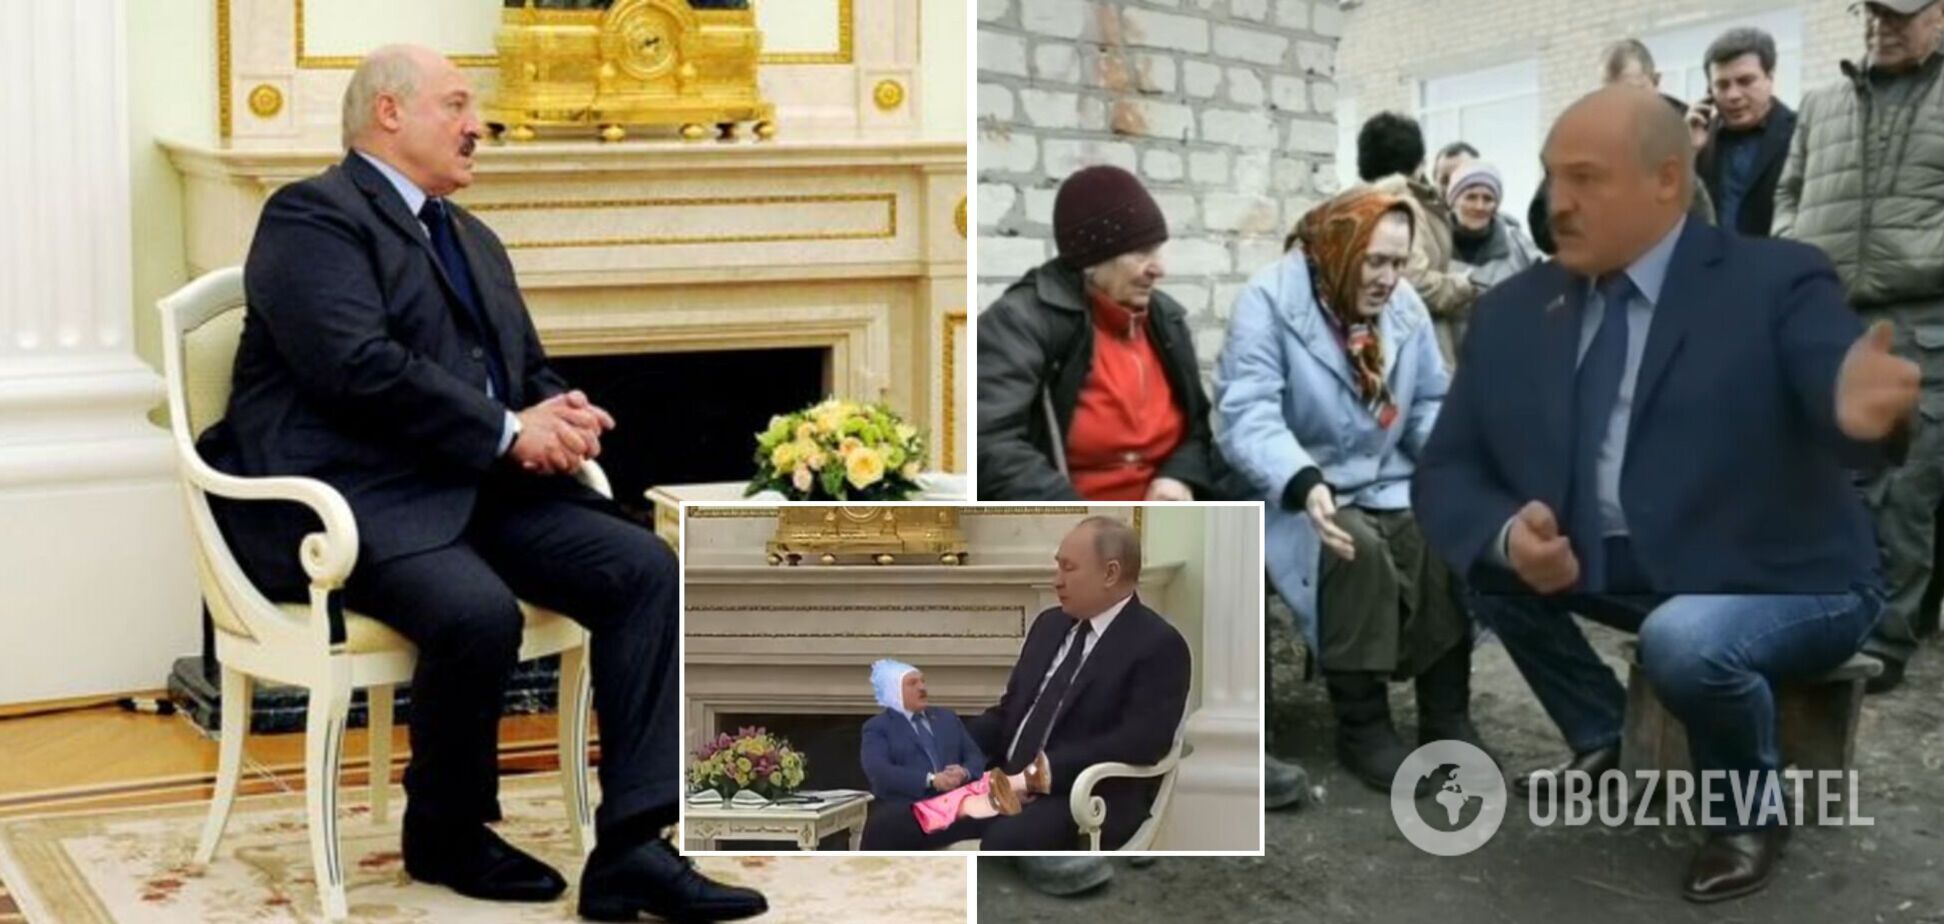 'А я вам зараз покажу, звідки на Білорусь готувався напад': монолог Лукашенка став новим мемом у мережі